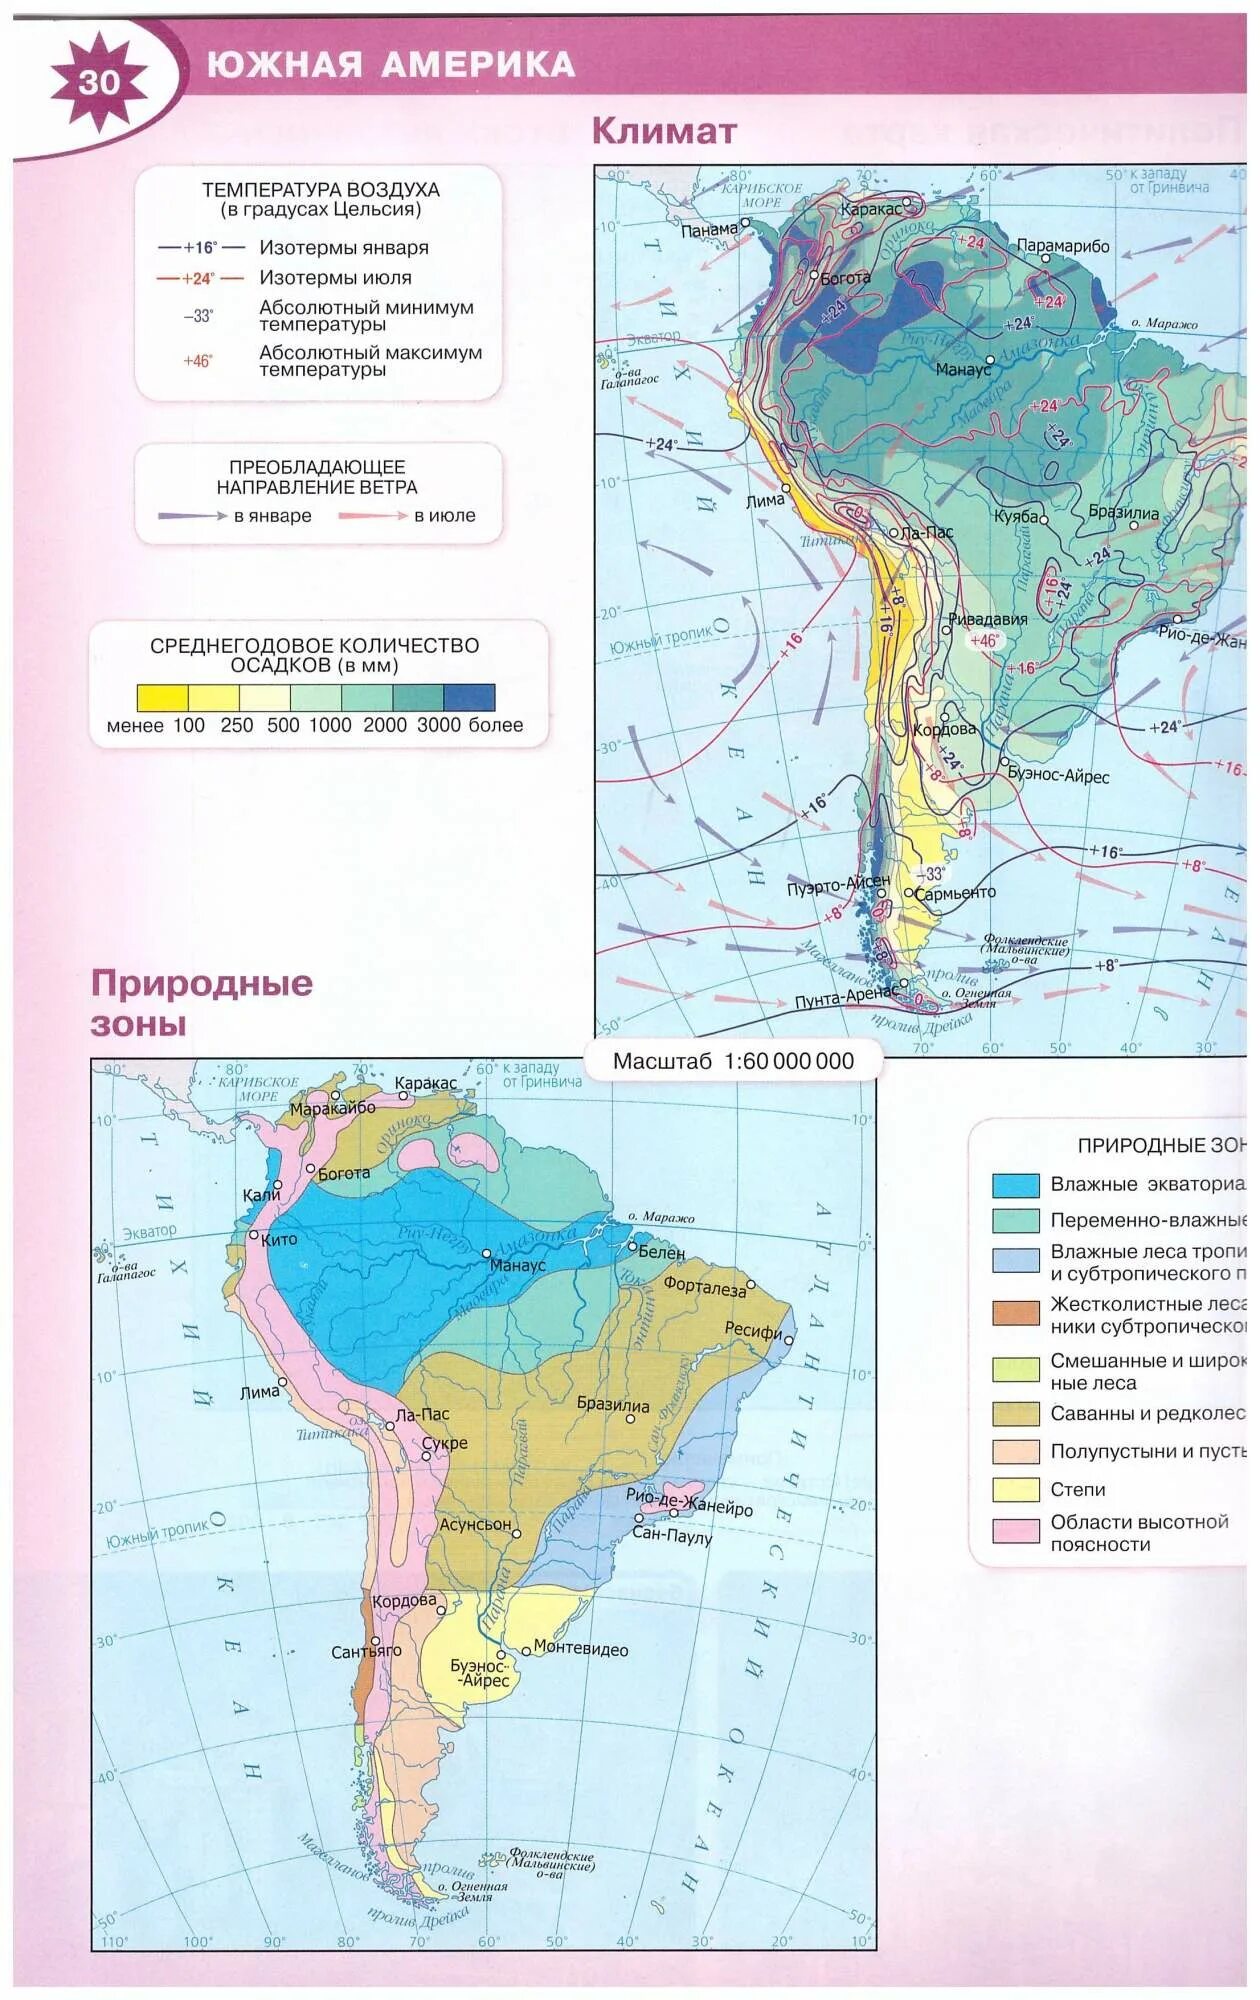 Атлас 7 класс Южная Америка атлас. Климатическая карта Южной Америки 7 класс атлас. Атлас география 7 класс Южная Америка климат. Карта природных зон Южной Америки 7 класс.